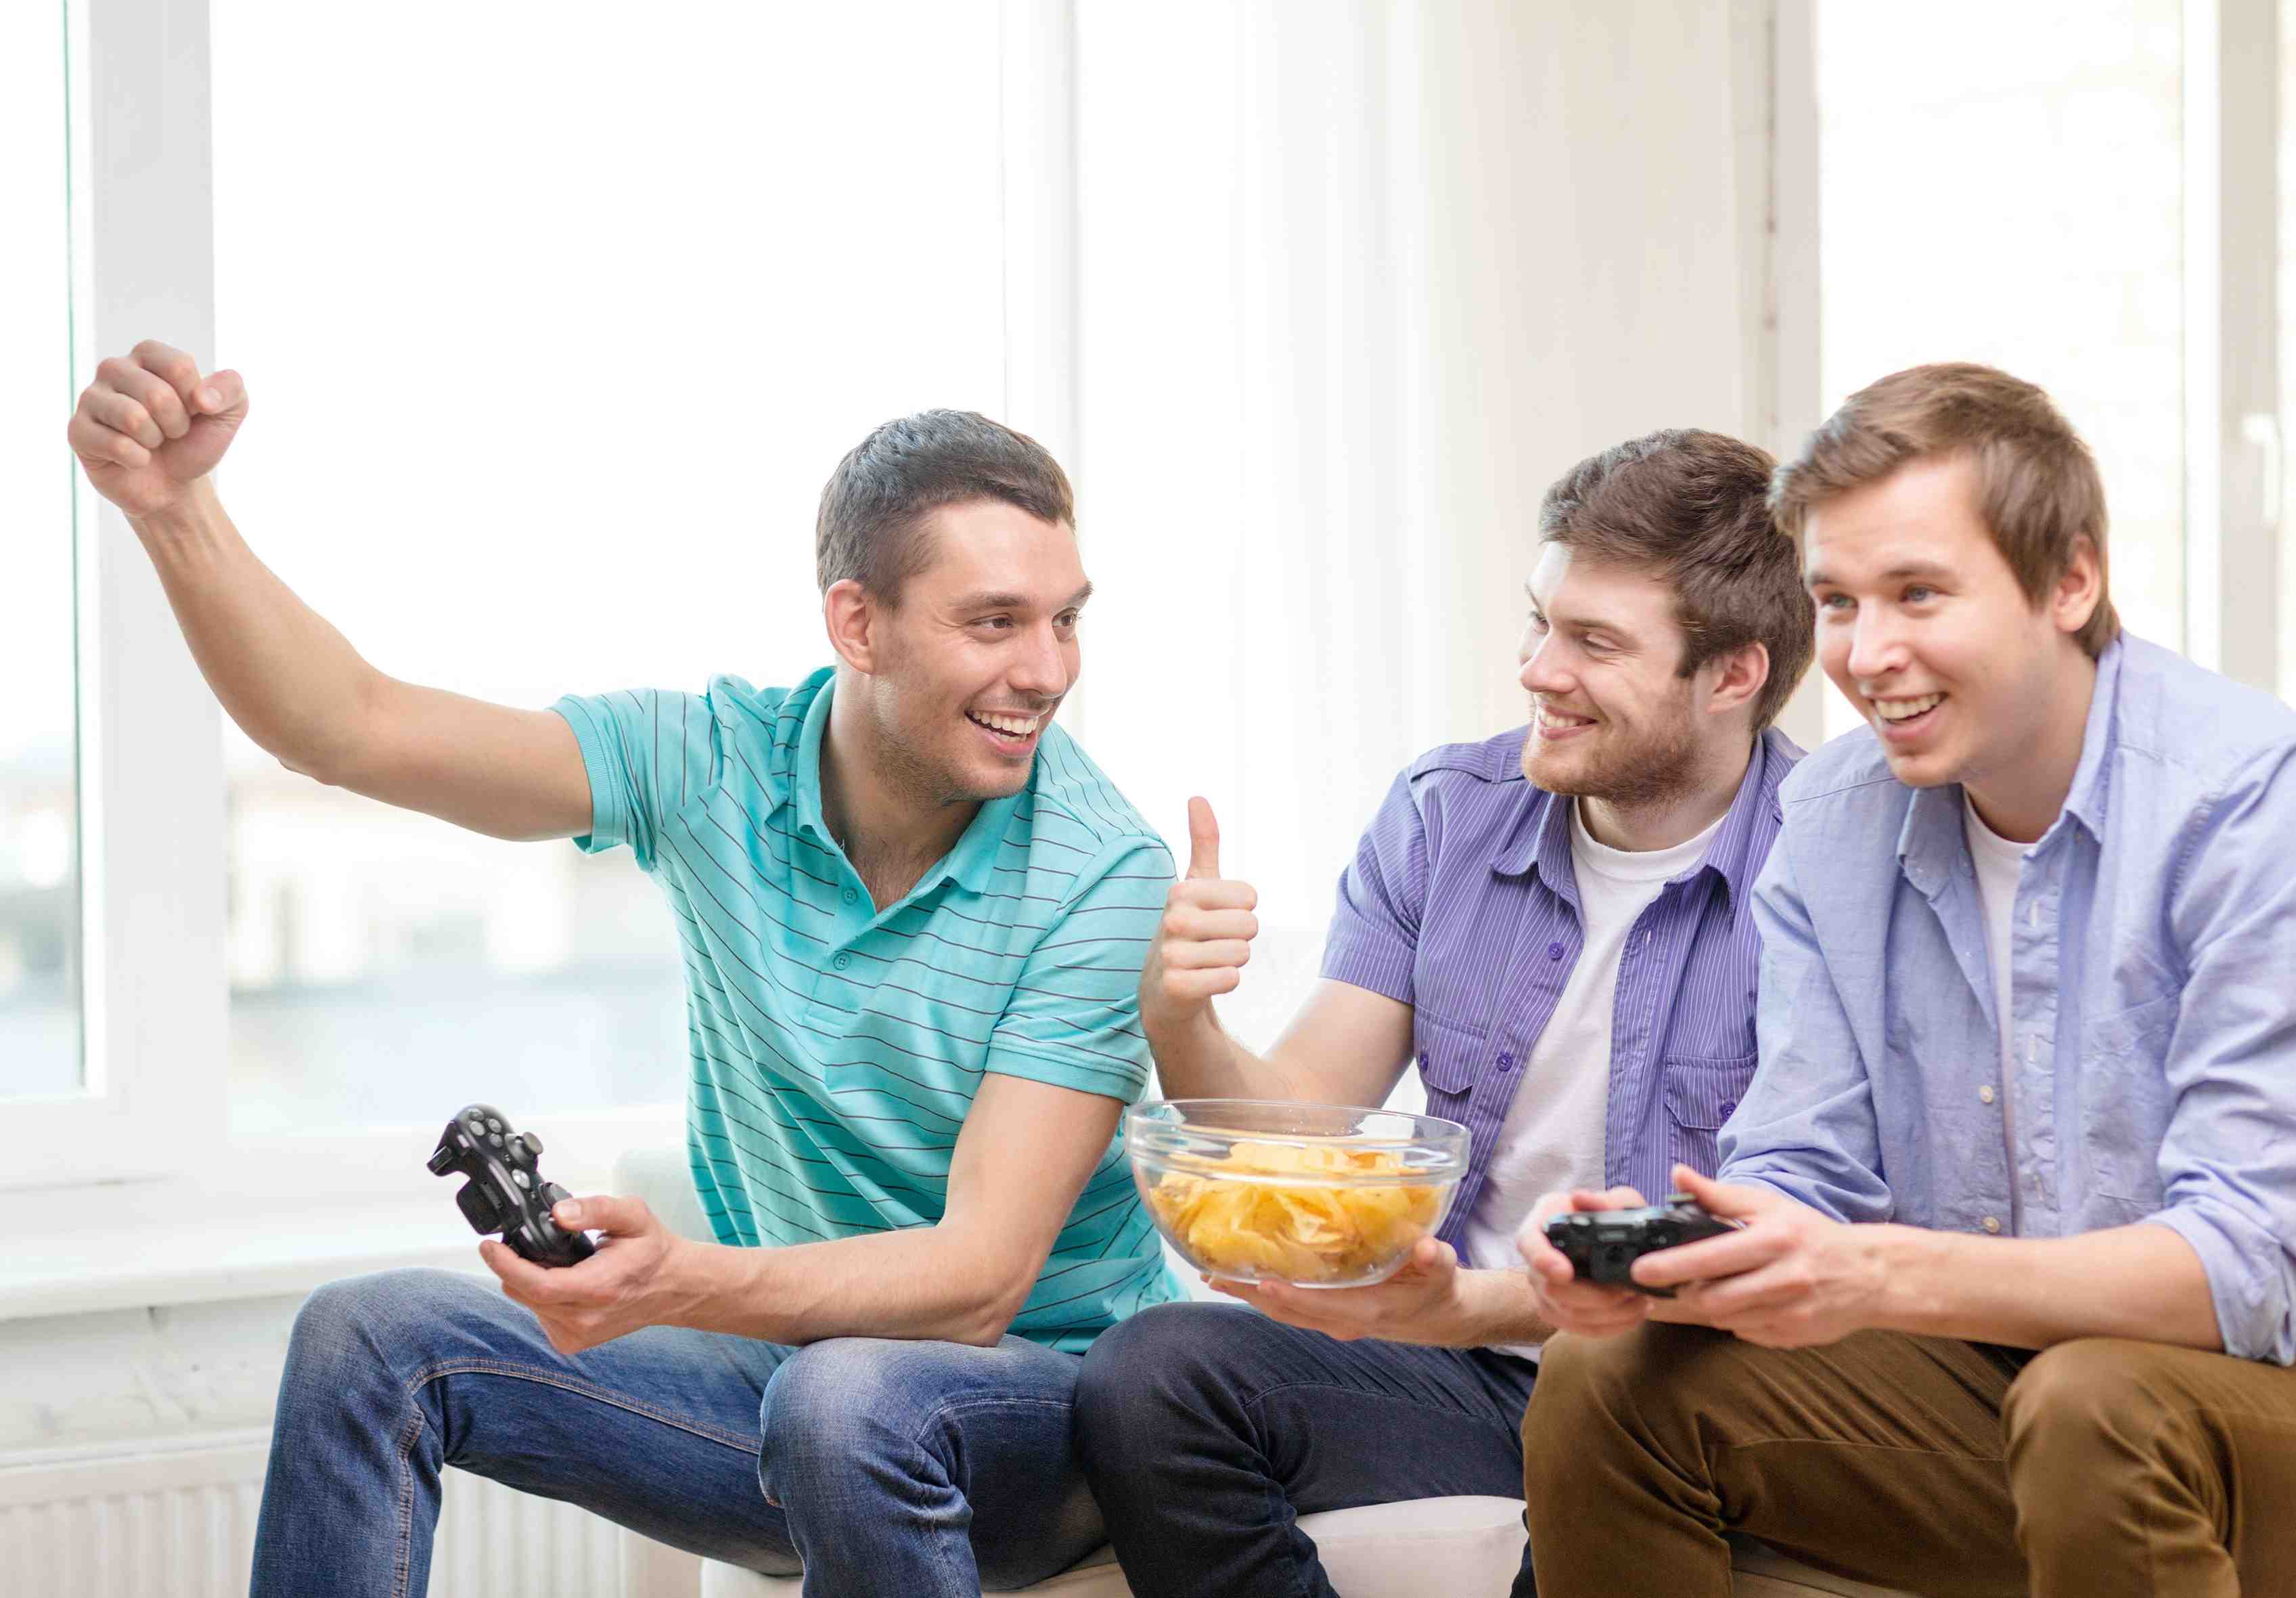 35 Juegos online para jugar con amigos - ¡Los mejores multijugadores!